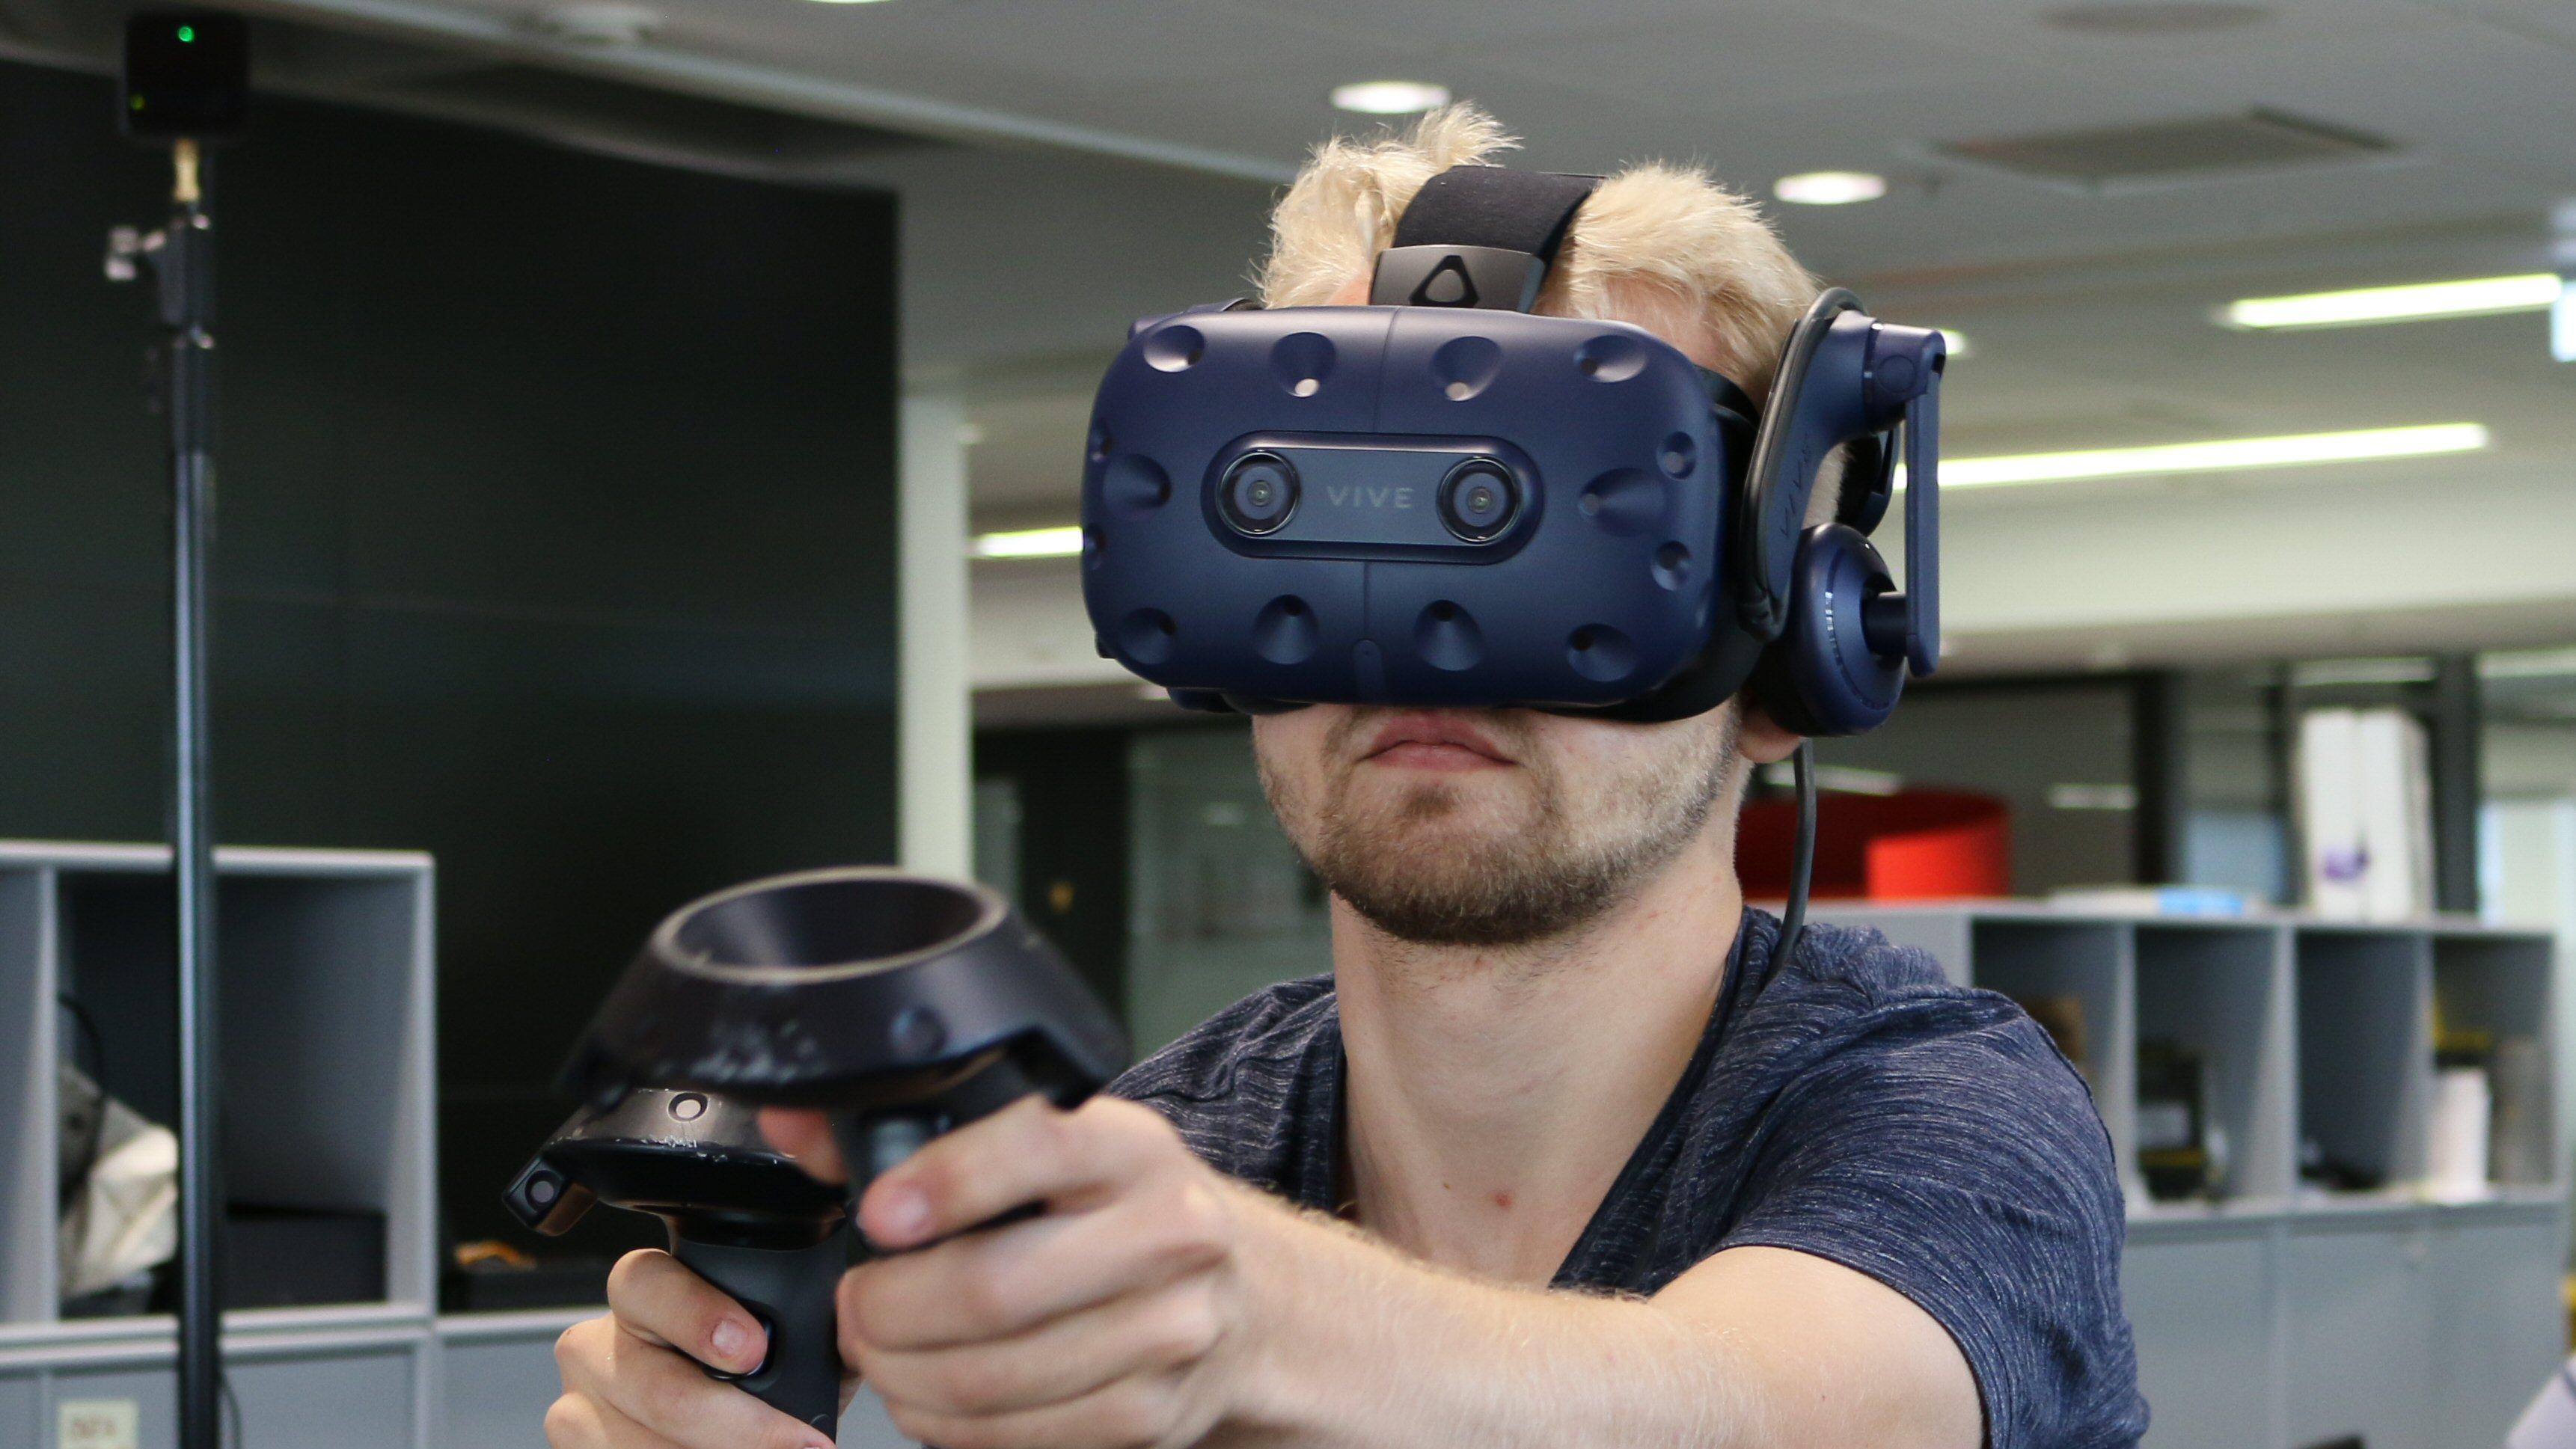 Nå gjør Valve VR med Vive enda bedre